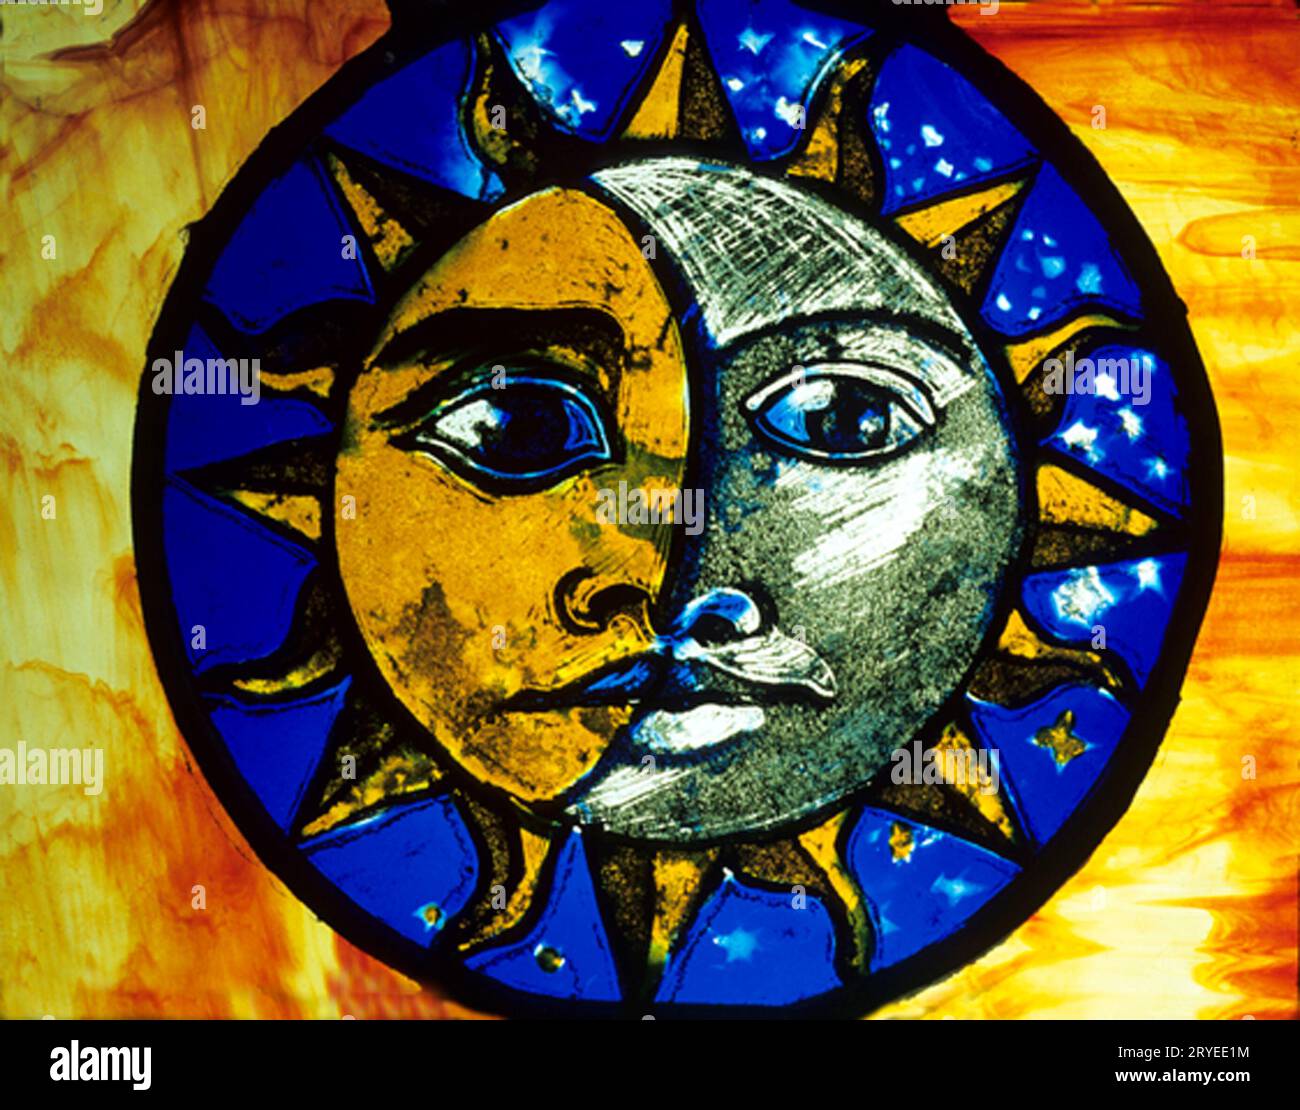 Cathédrale d'Ely, Musée du verre teinté, Soleil et Lune, visage humain, verre moderne, Cambridgeshire, Angleterre, Royaume-Uni Banque D'Images